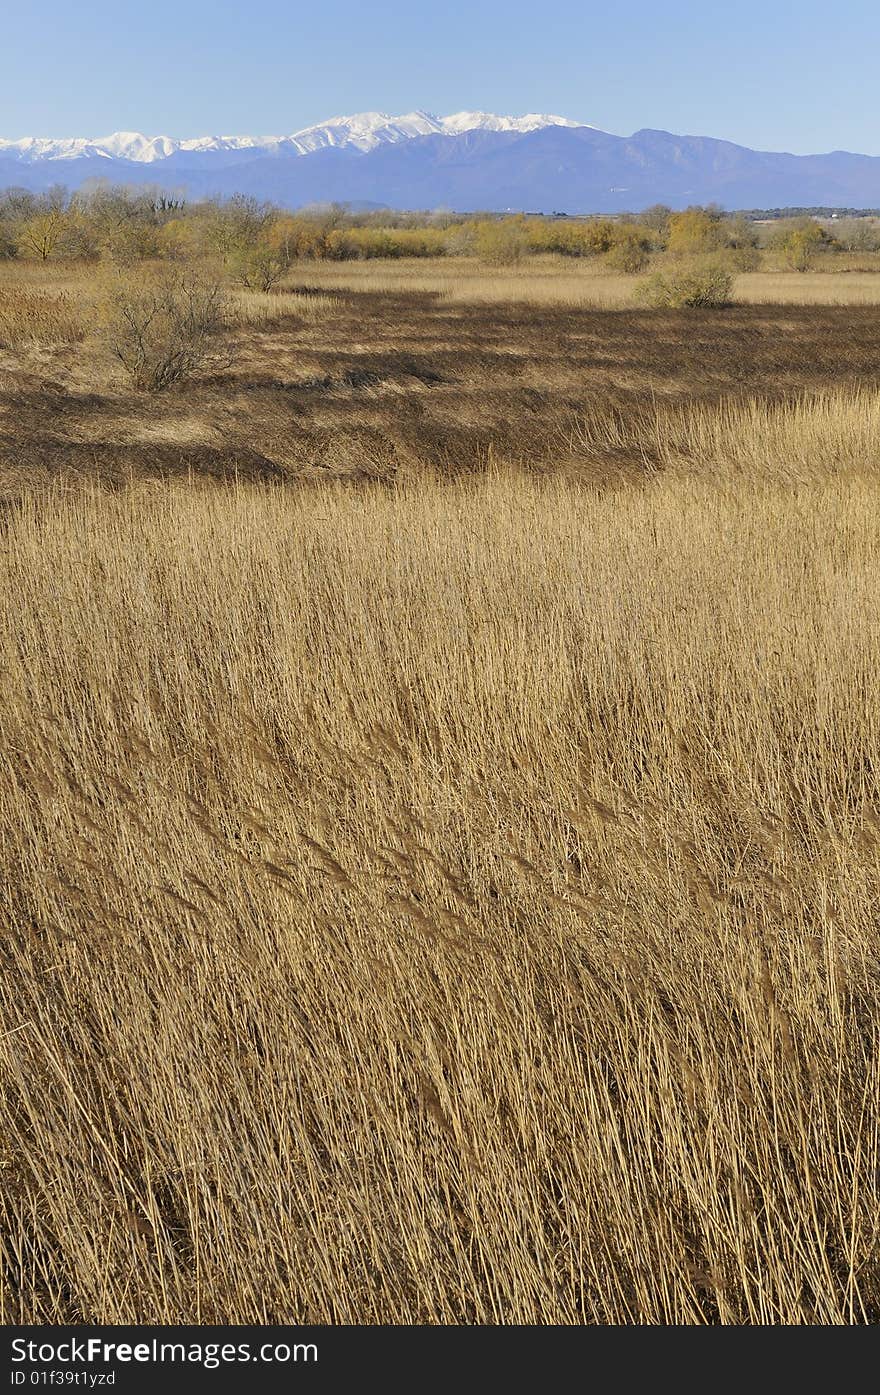 Reed field in Spain, near Pyrénées mountain